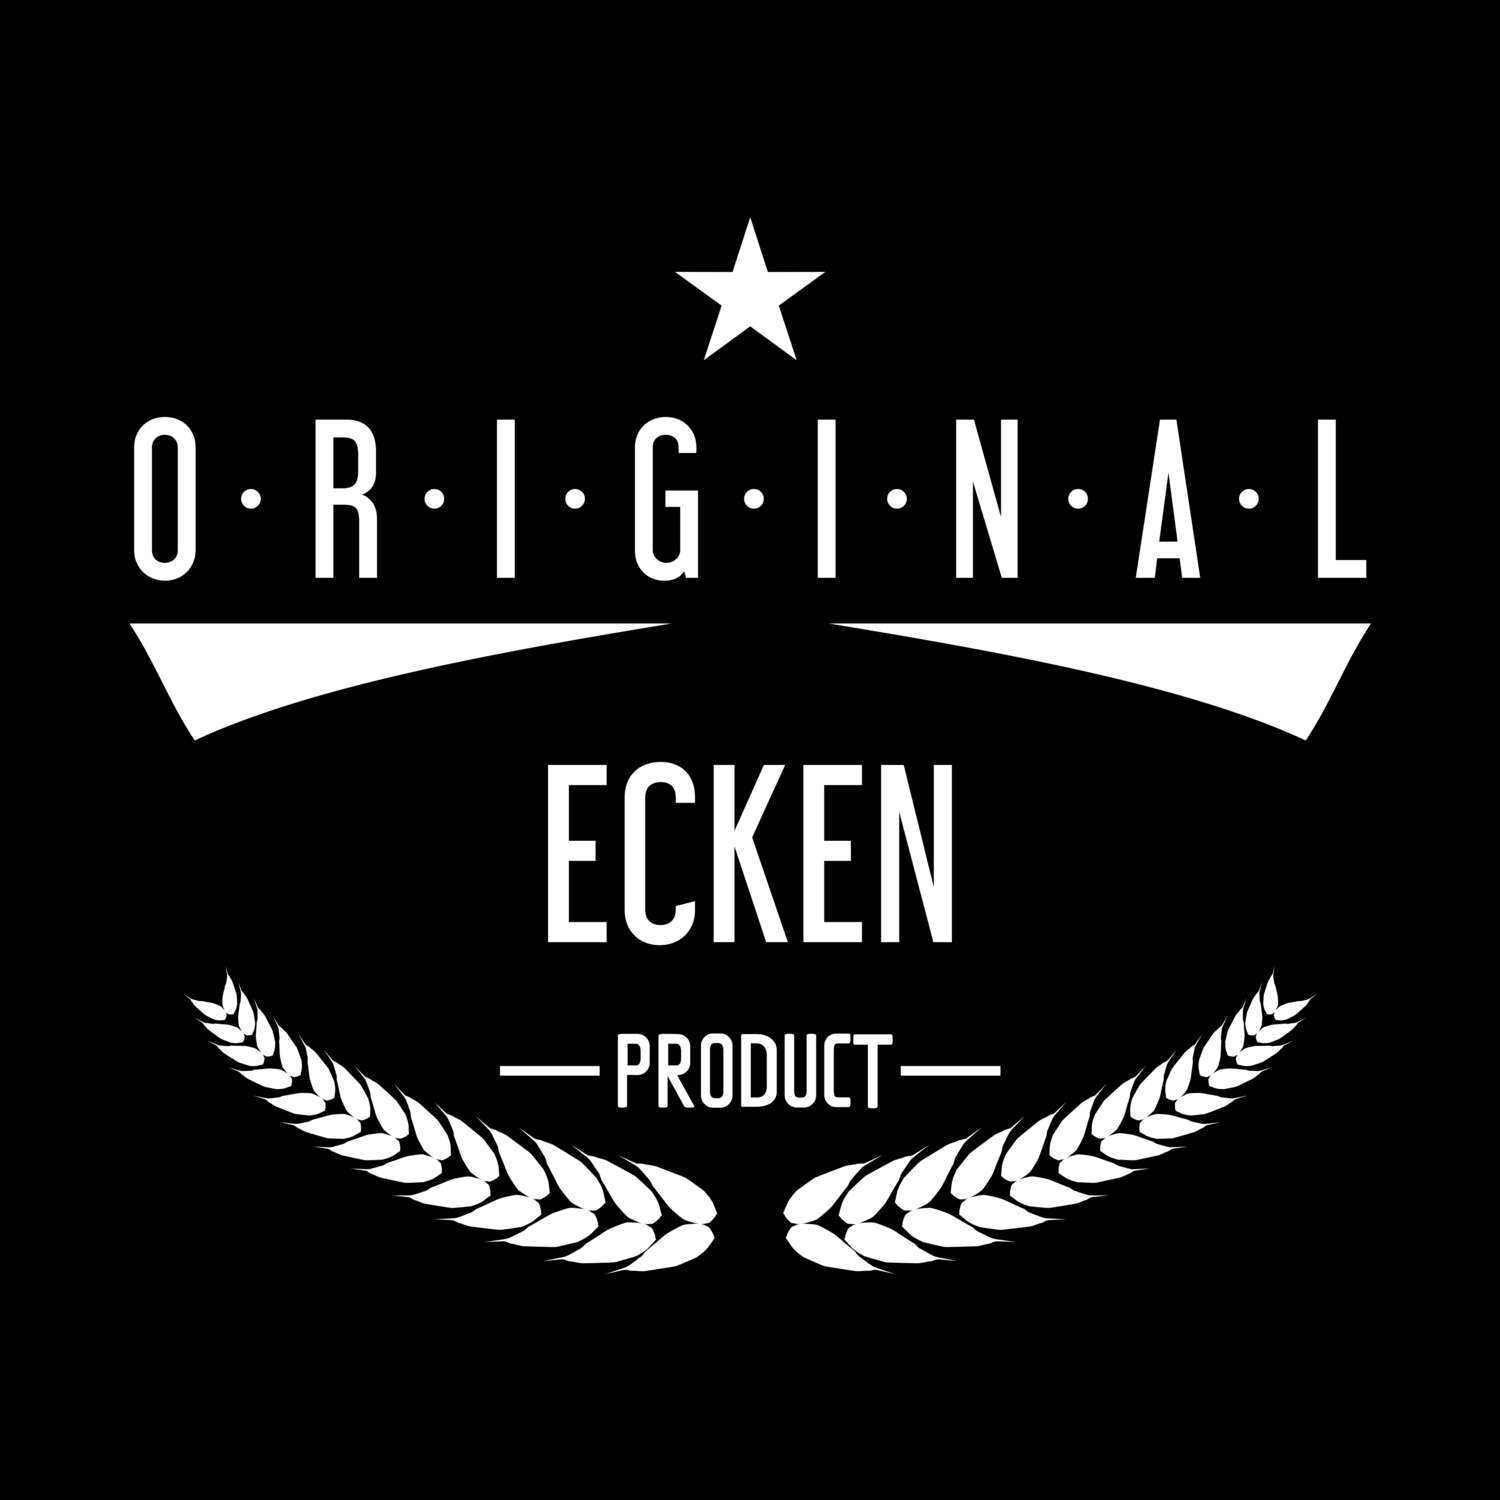 Ecken T-Shirt »Original Product«